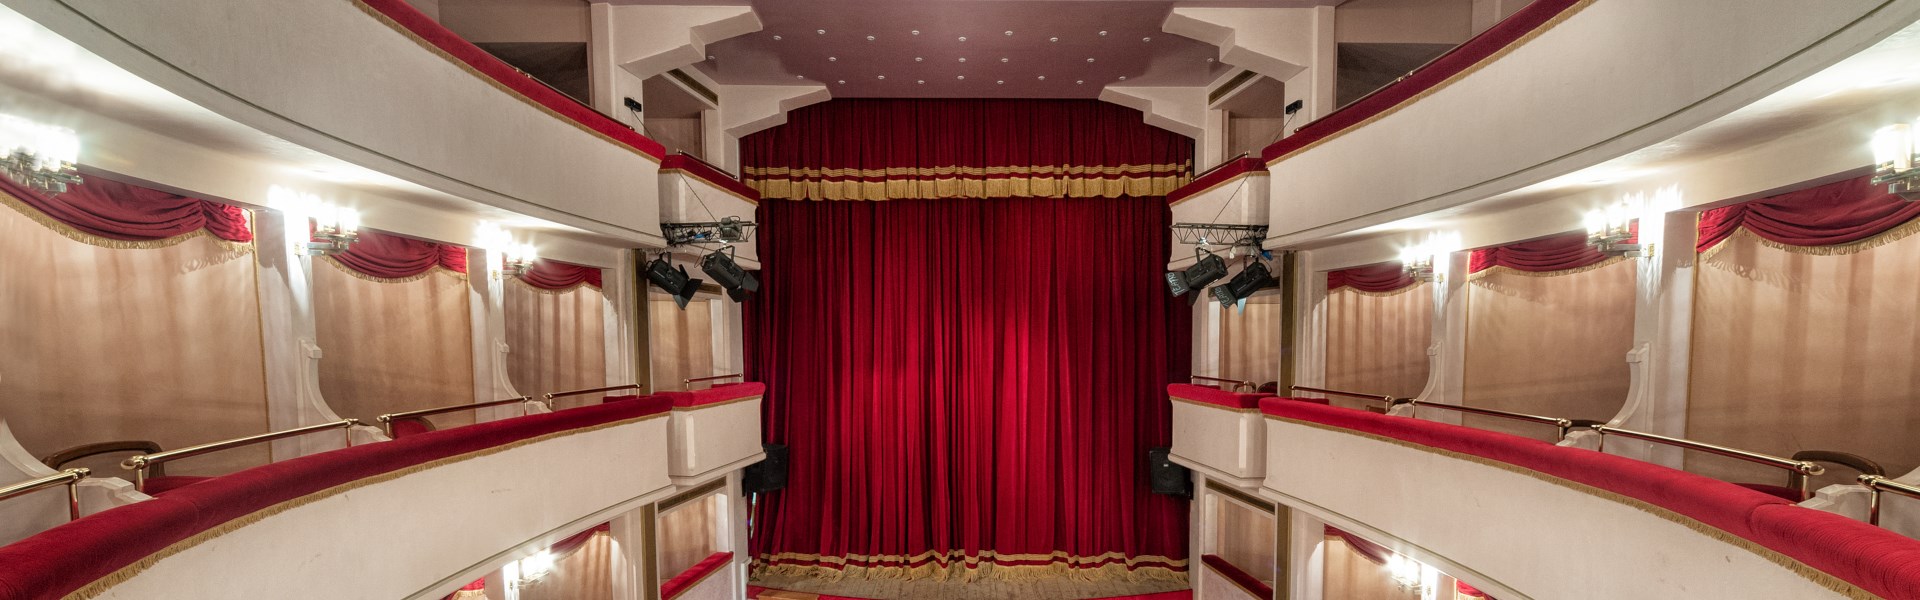 San Costanzo - Teatro della Concordia